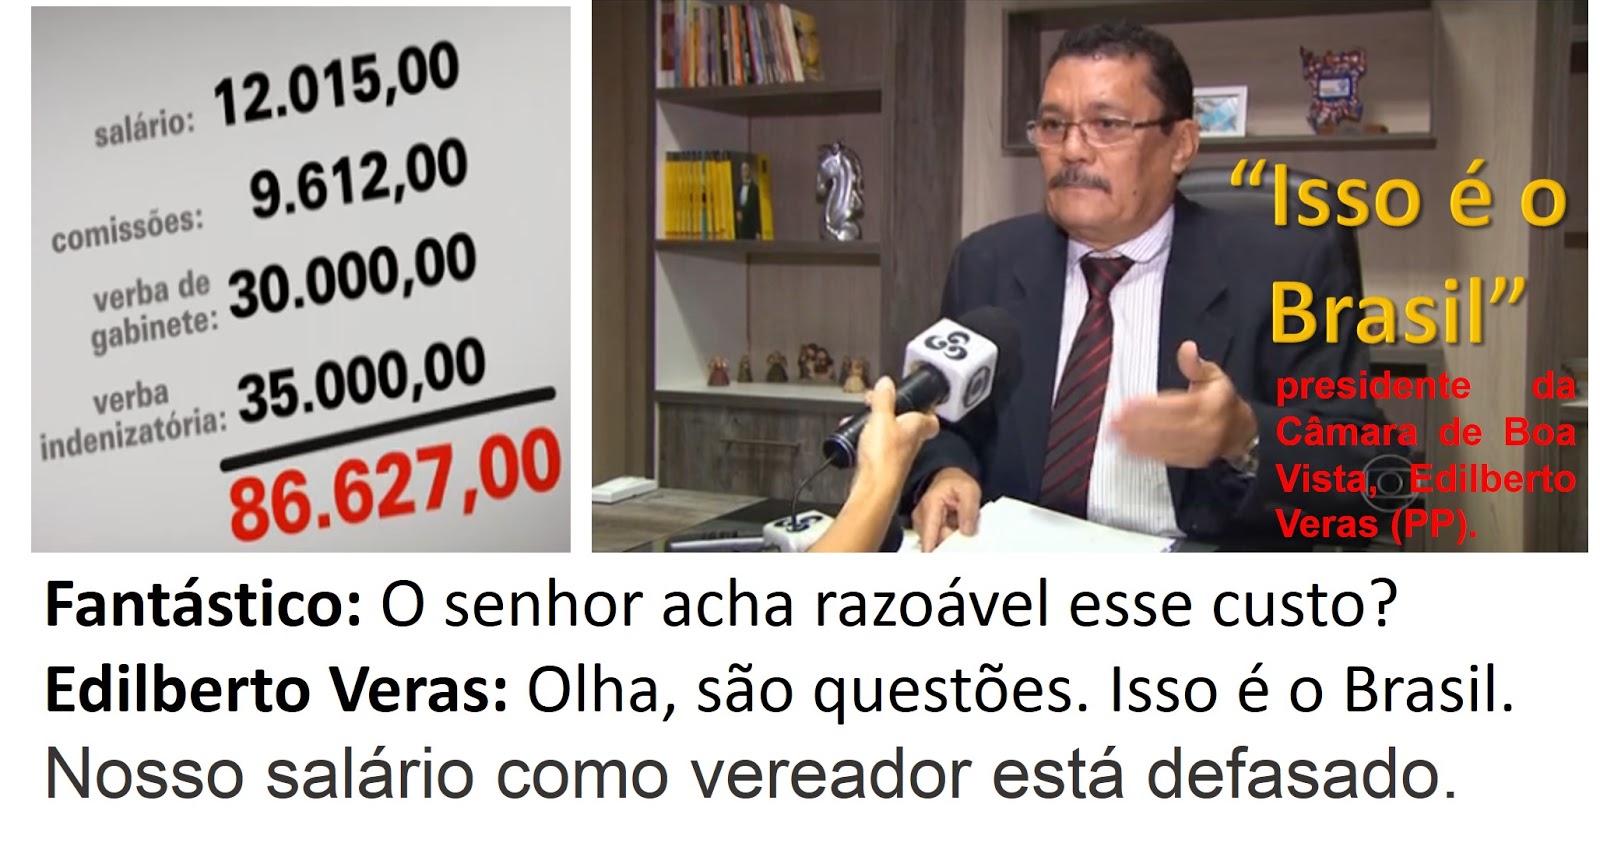 "ISSO É O BRASIL !!", DIZ PRESIDENTE DE CÂMARA DE VEREADORES QUE INVENTAM DESPESAS PARA DESVIAREM DINHEIRO PÚBLICO.